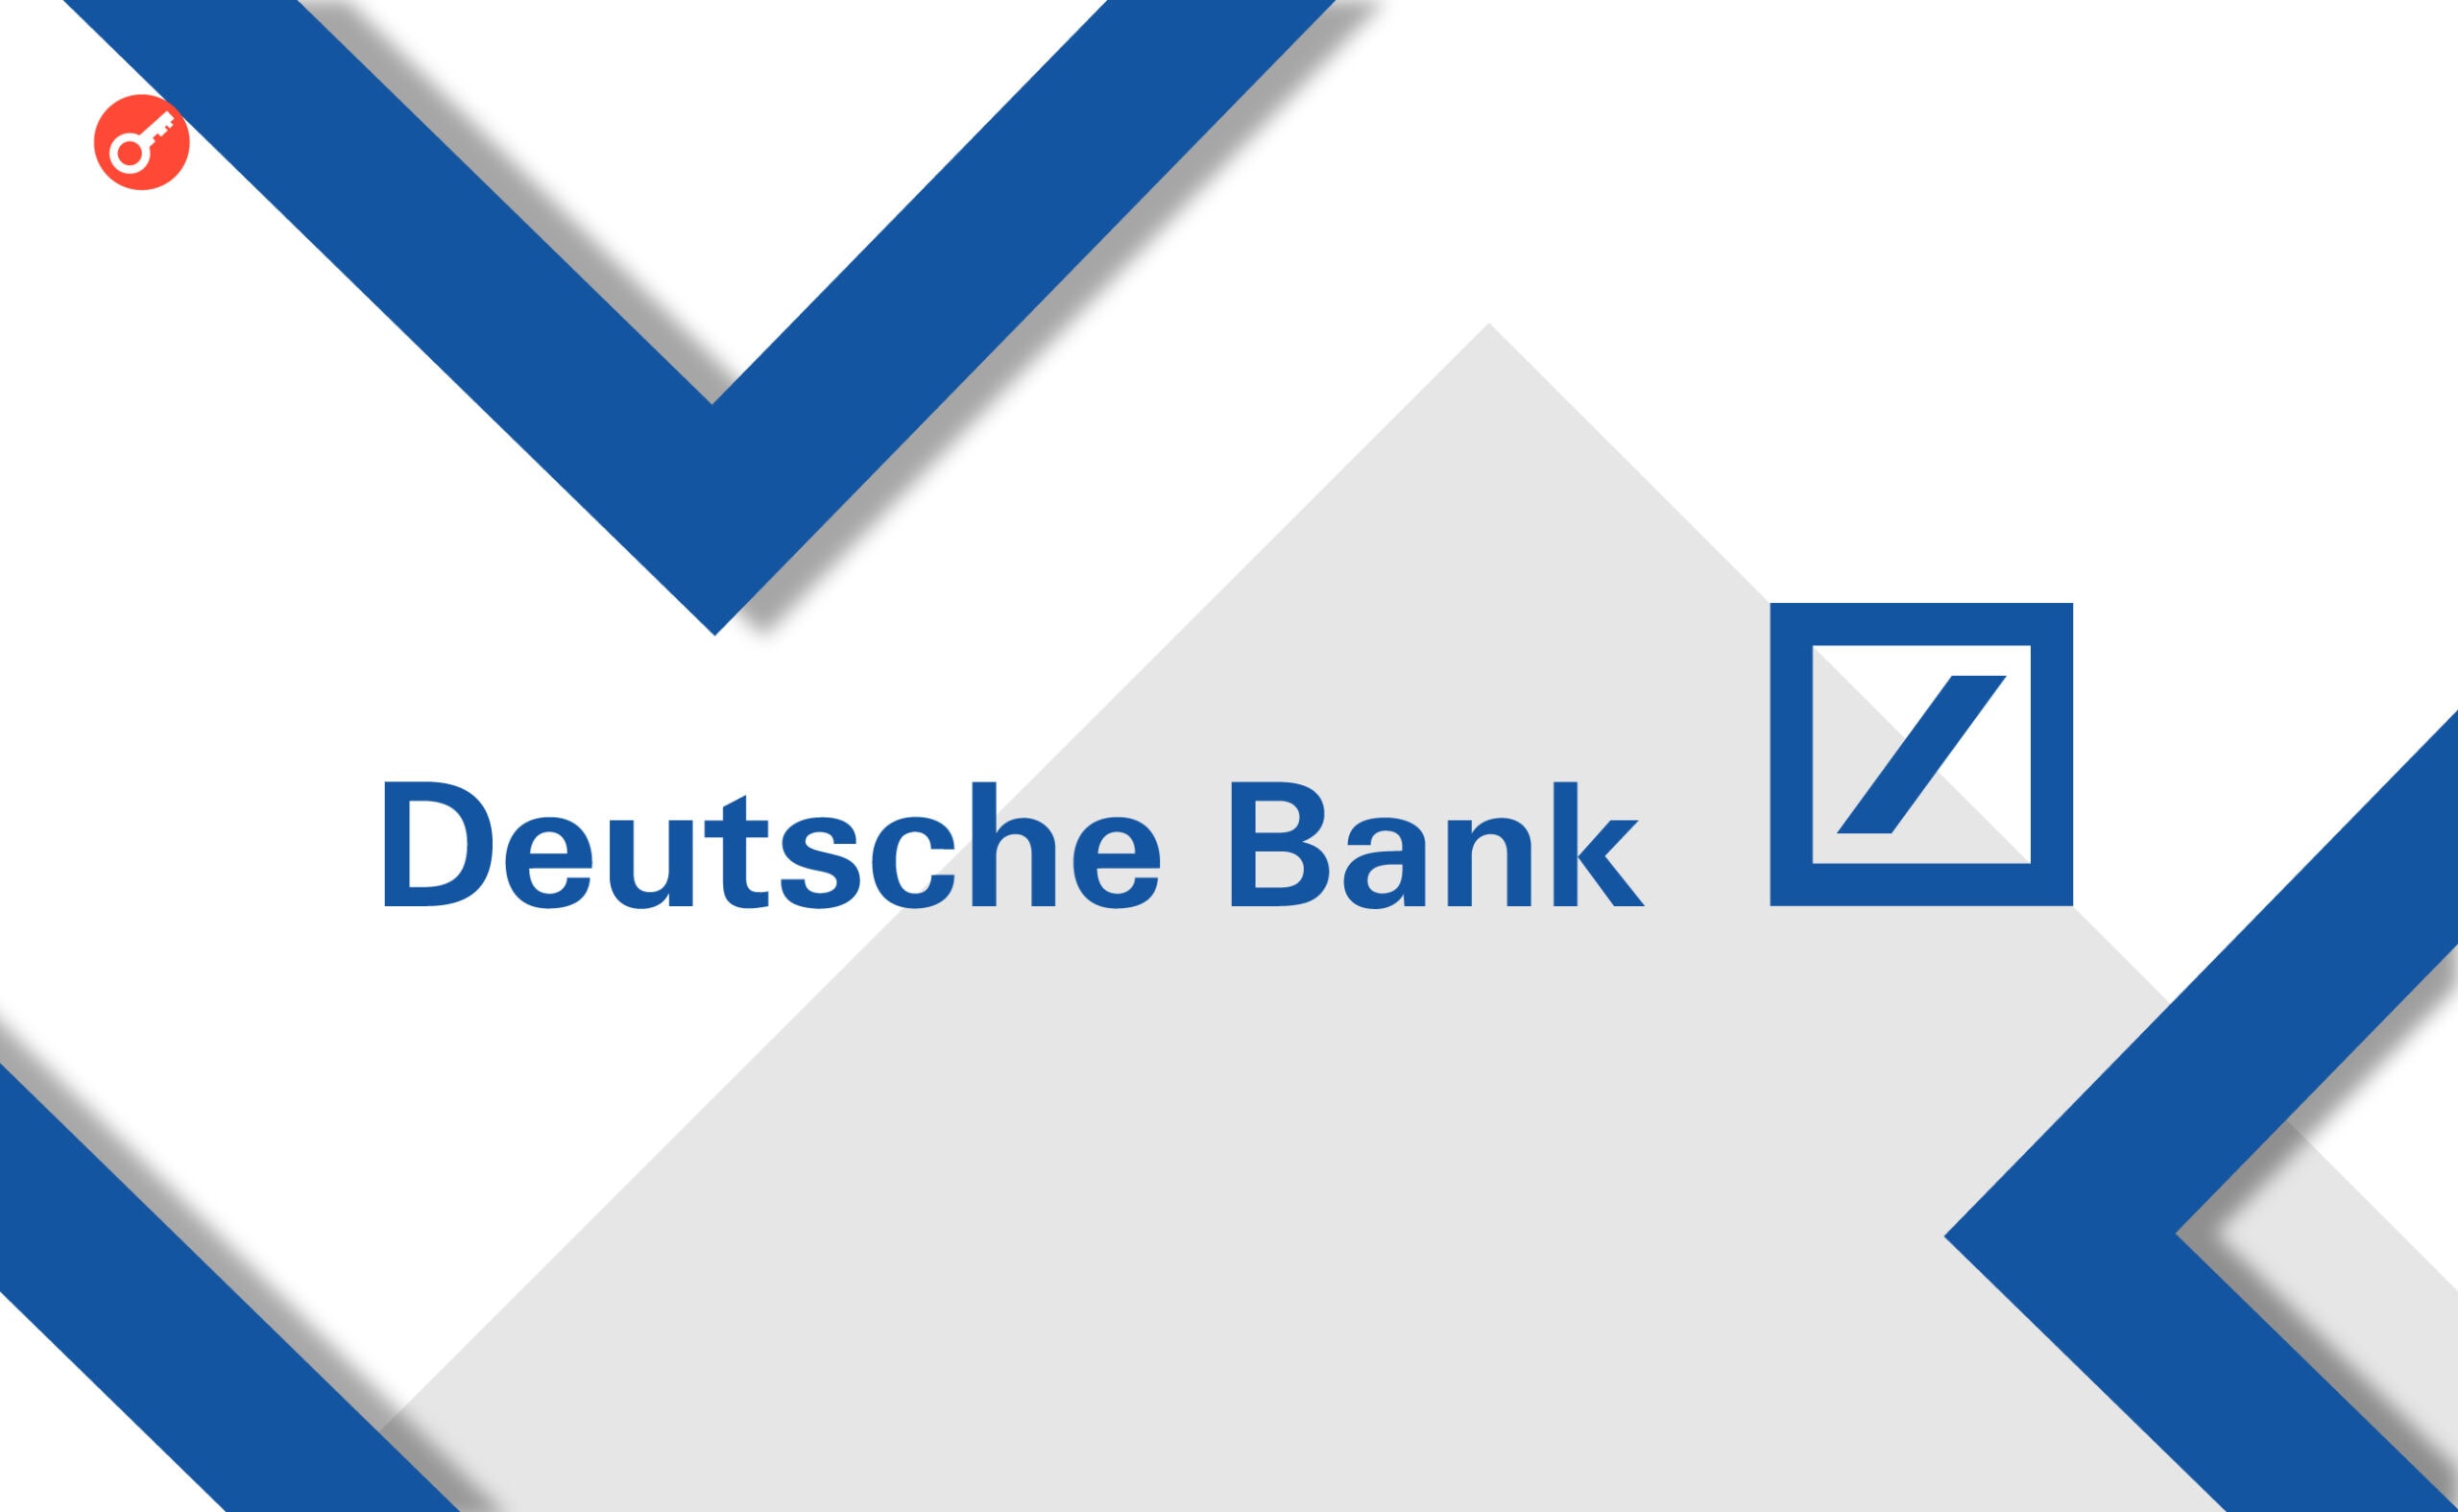 Deutsche Bank подає заявку на отримання ліцензії оператора криптовалют. Головний колаж новини.